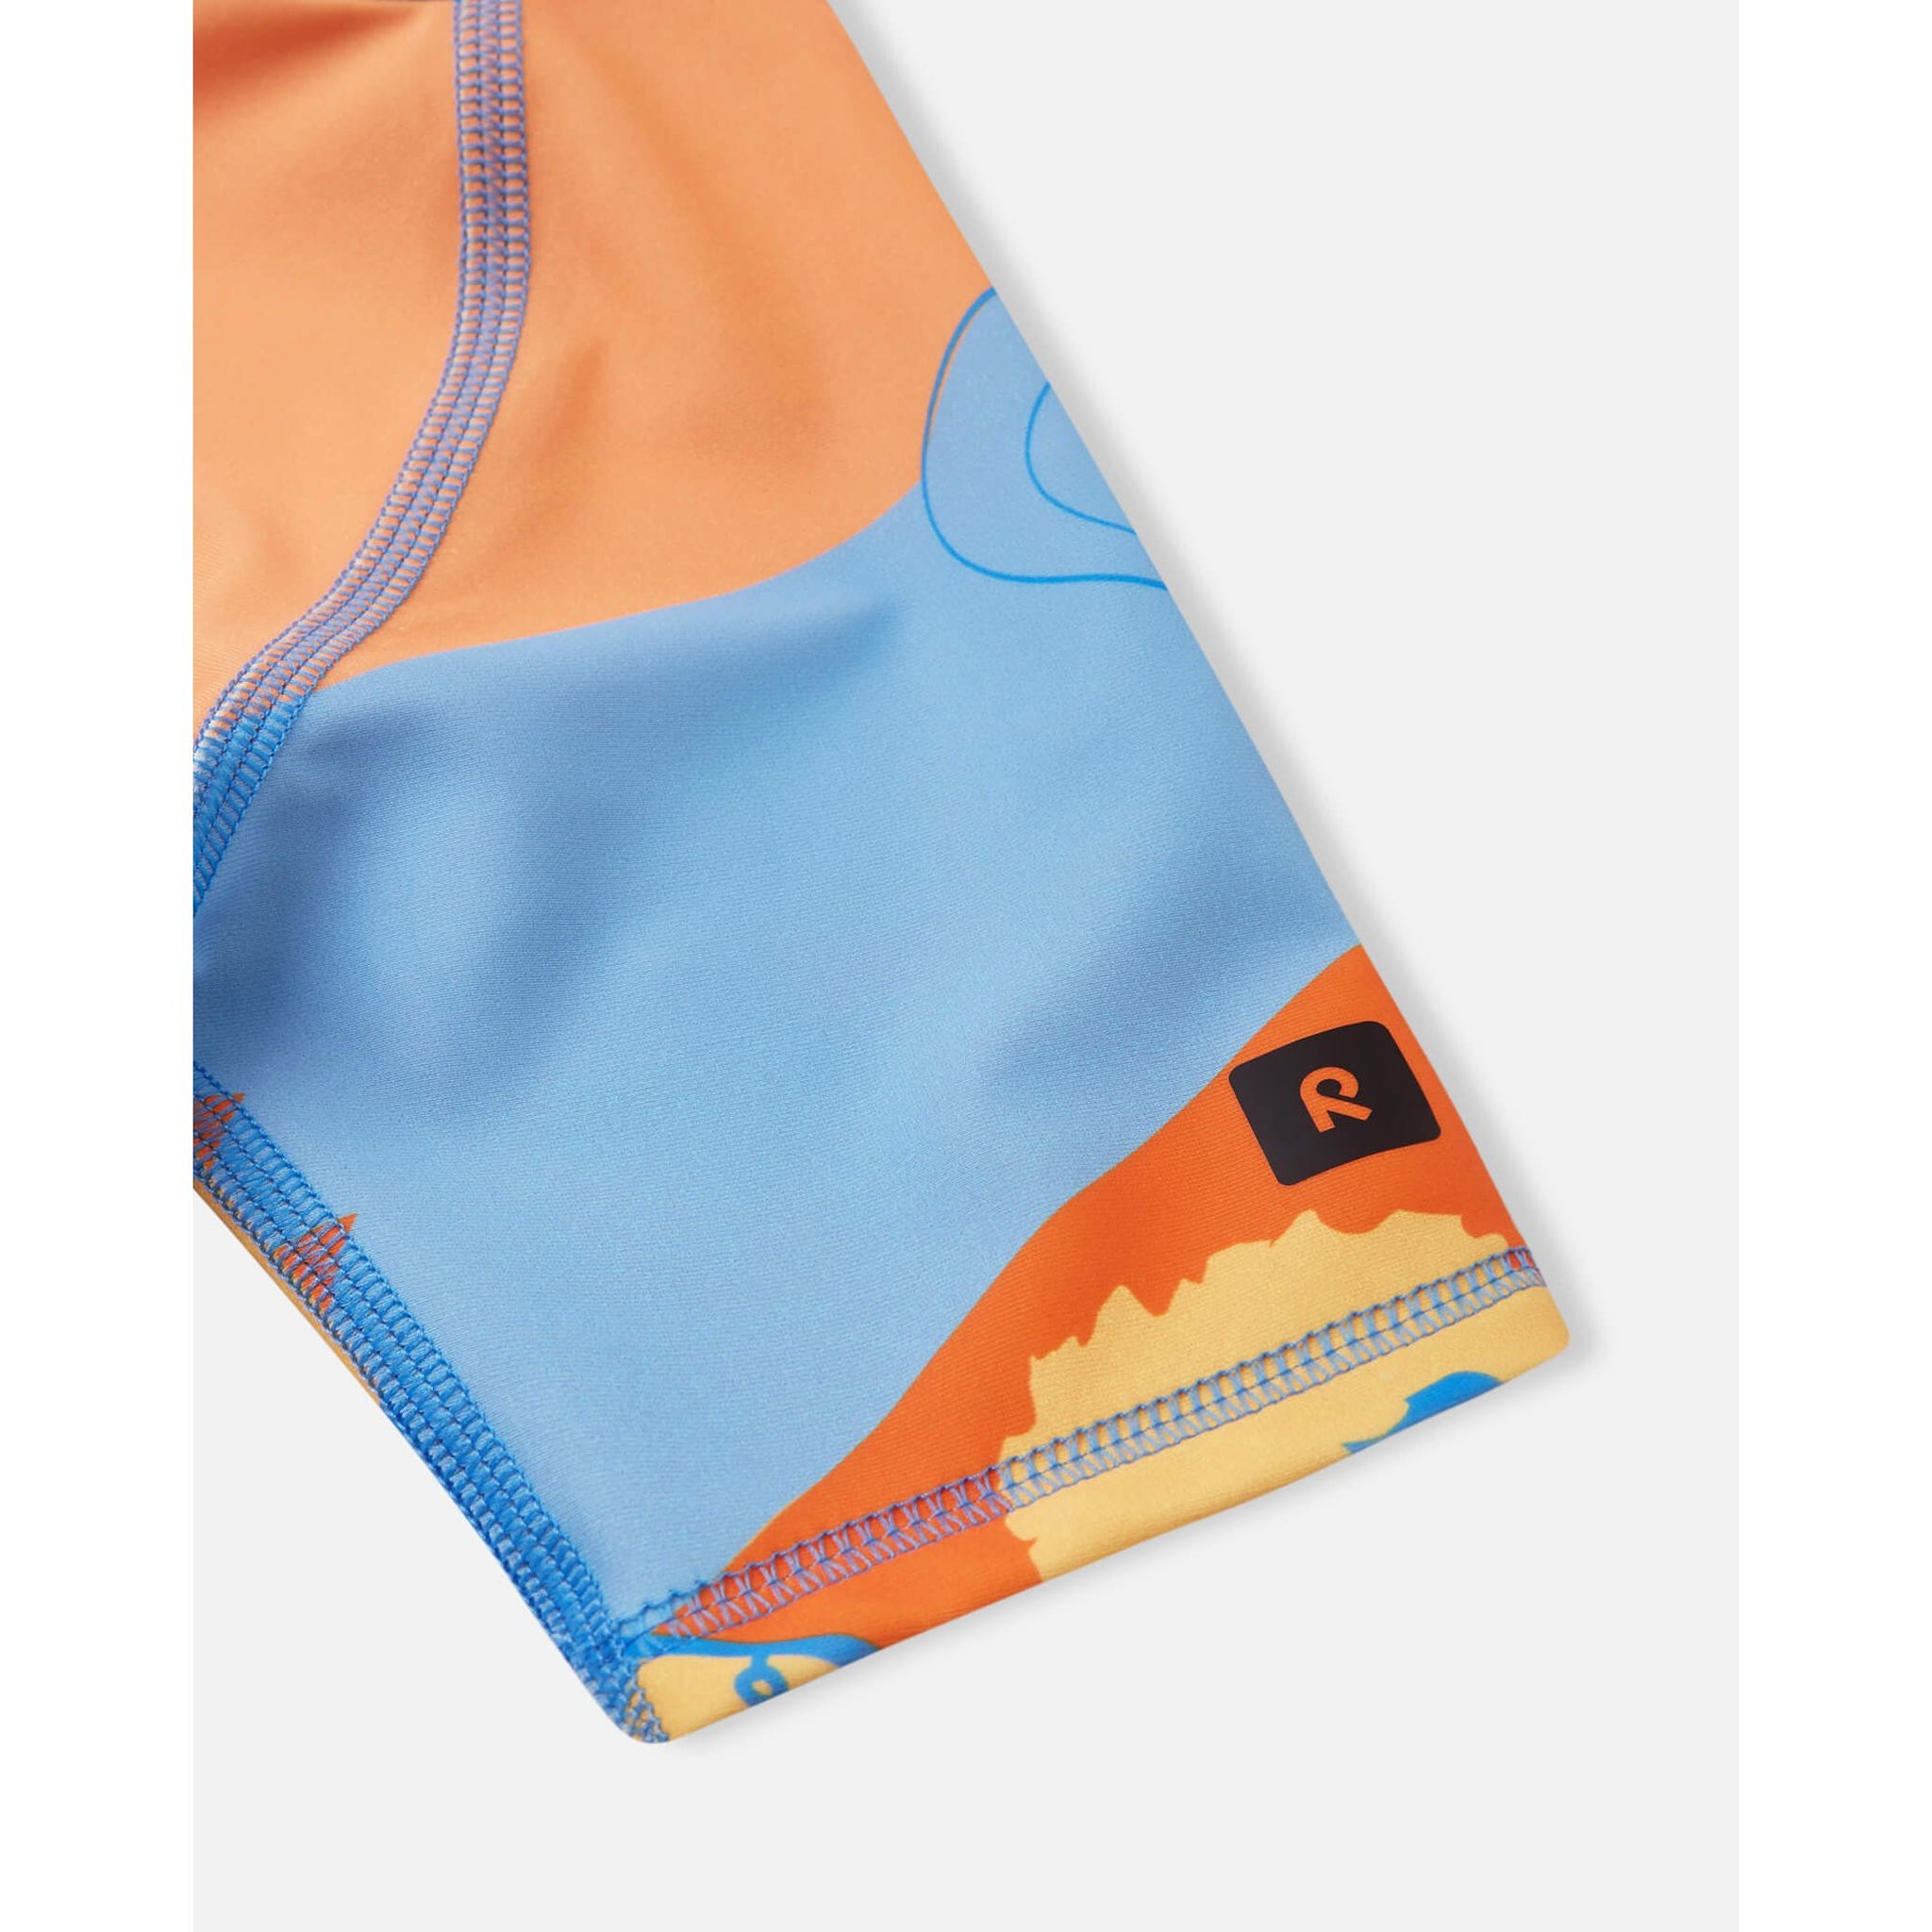 Costum de baie bebelusi Atlantti cu filtru UV 50+, Portocaliu/Albastru